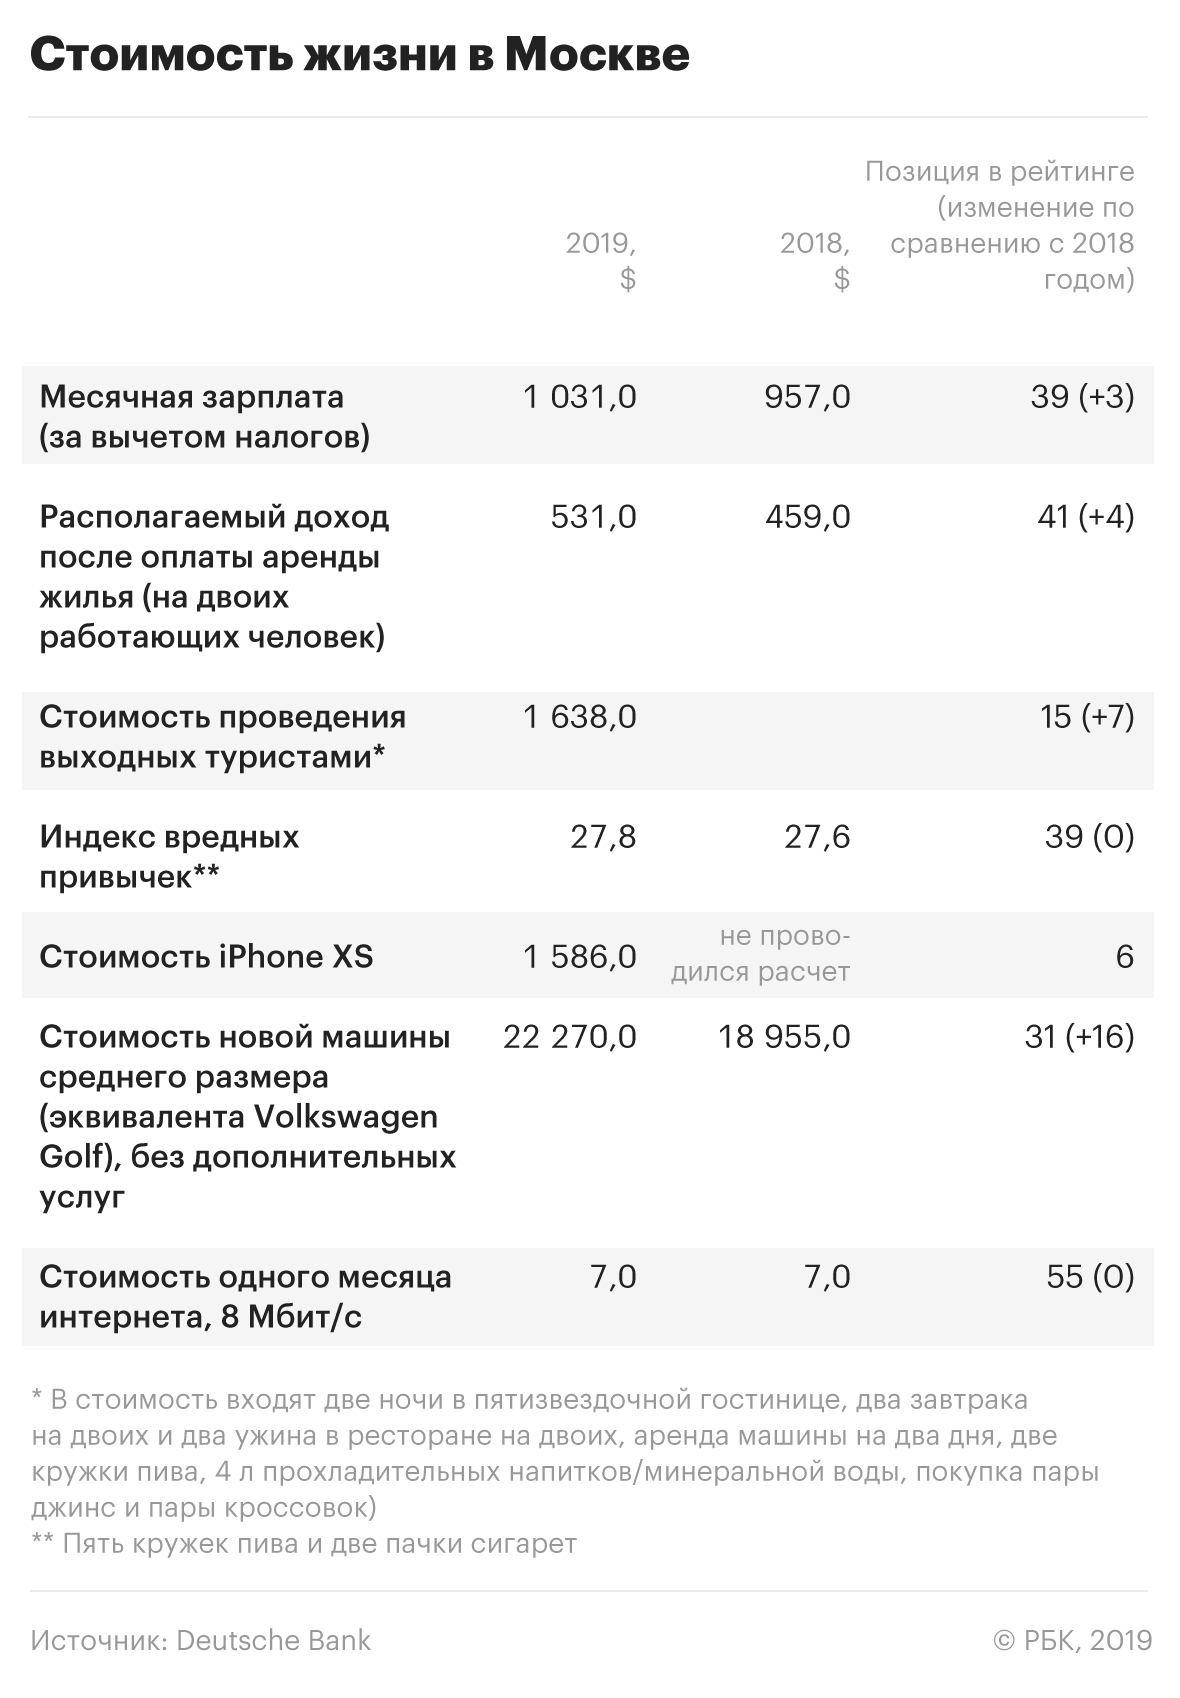 В Москве оказались одни из самых дорогих iPhone и самый дешевый интернет